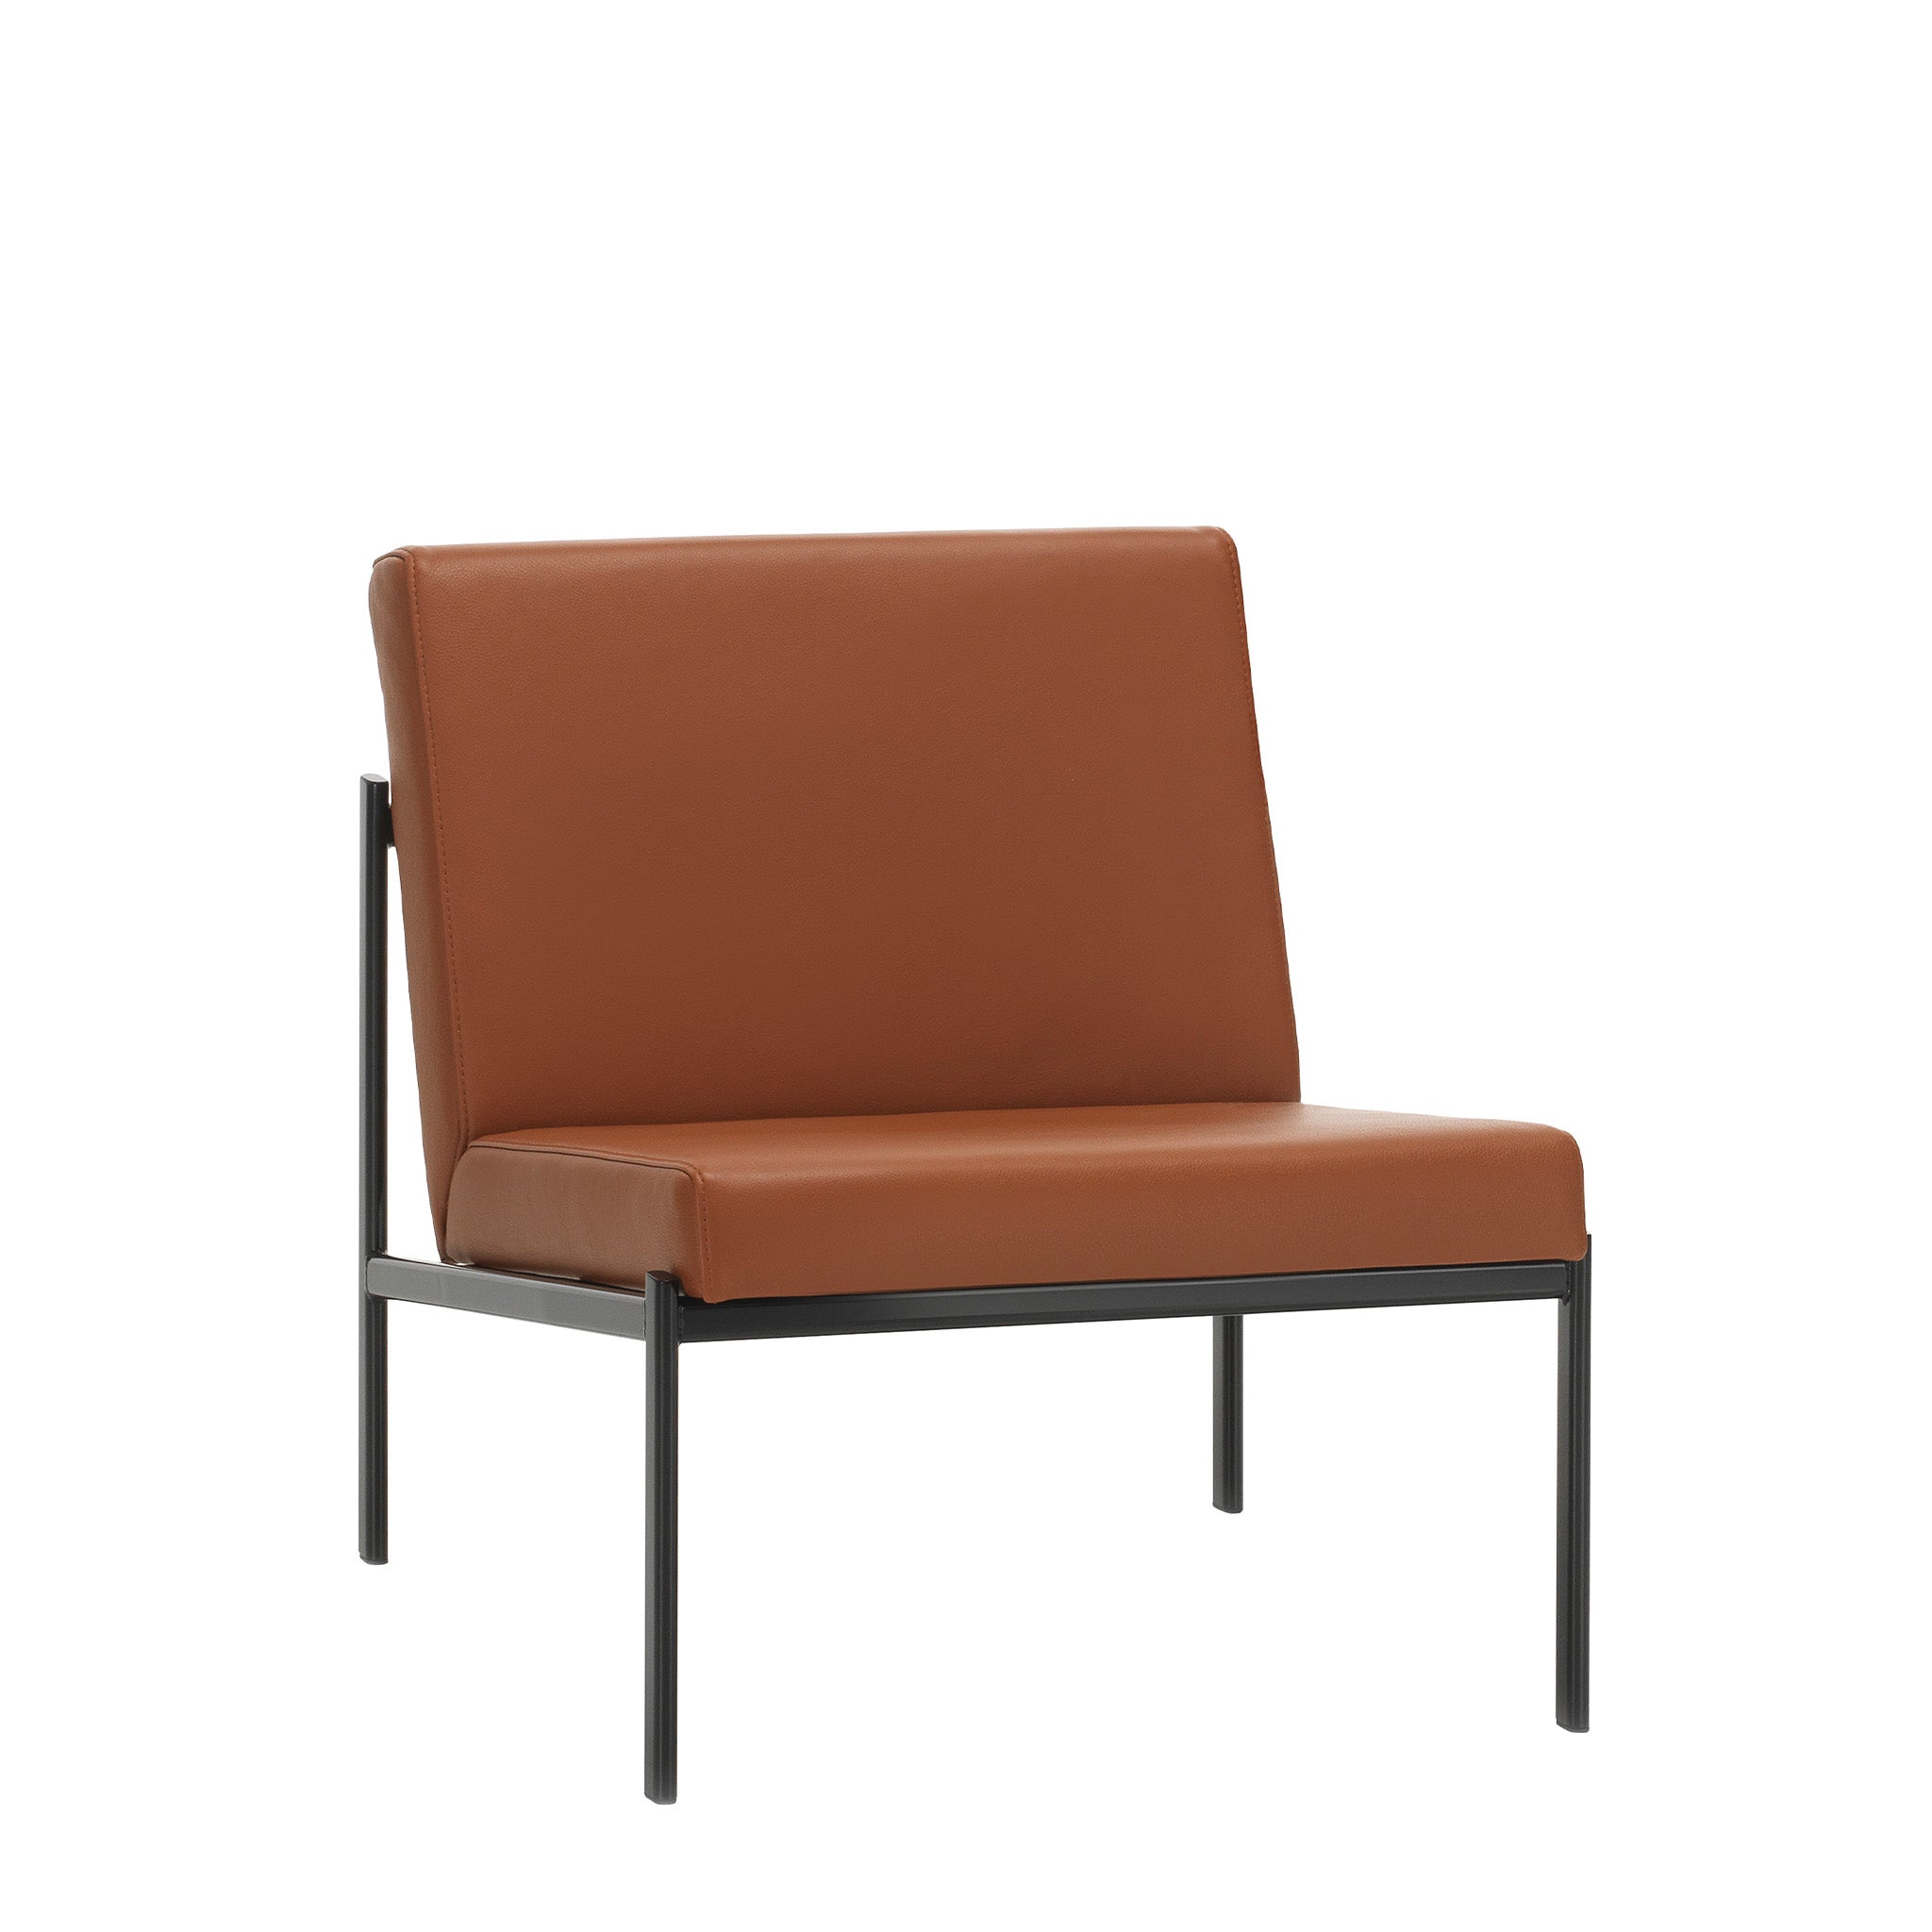 Kiki Lounge Chair By Artek